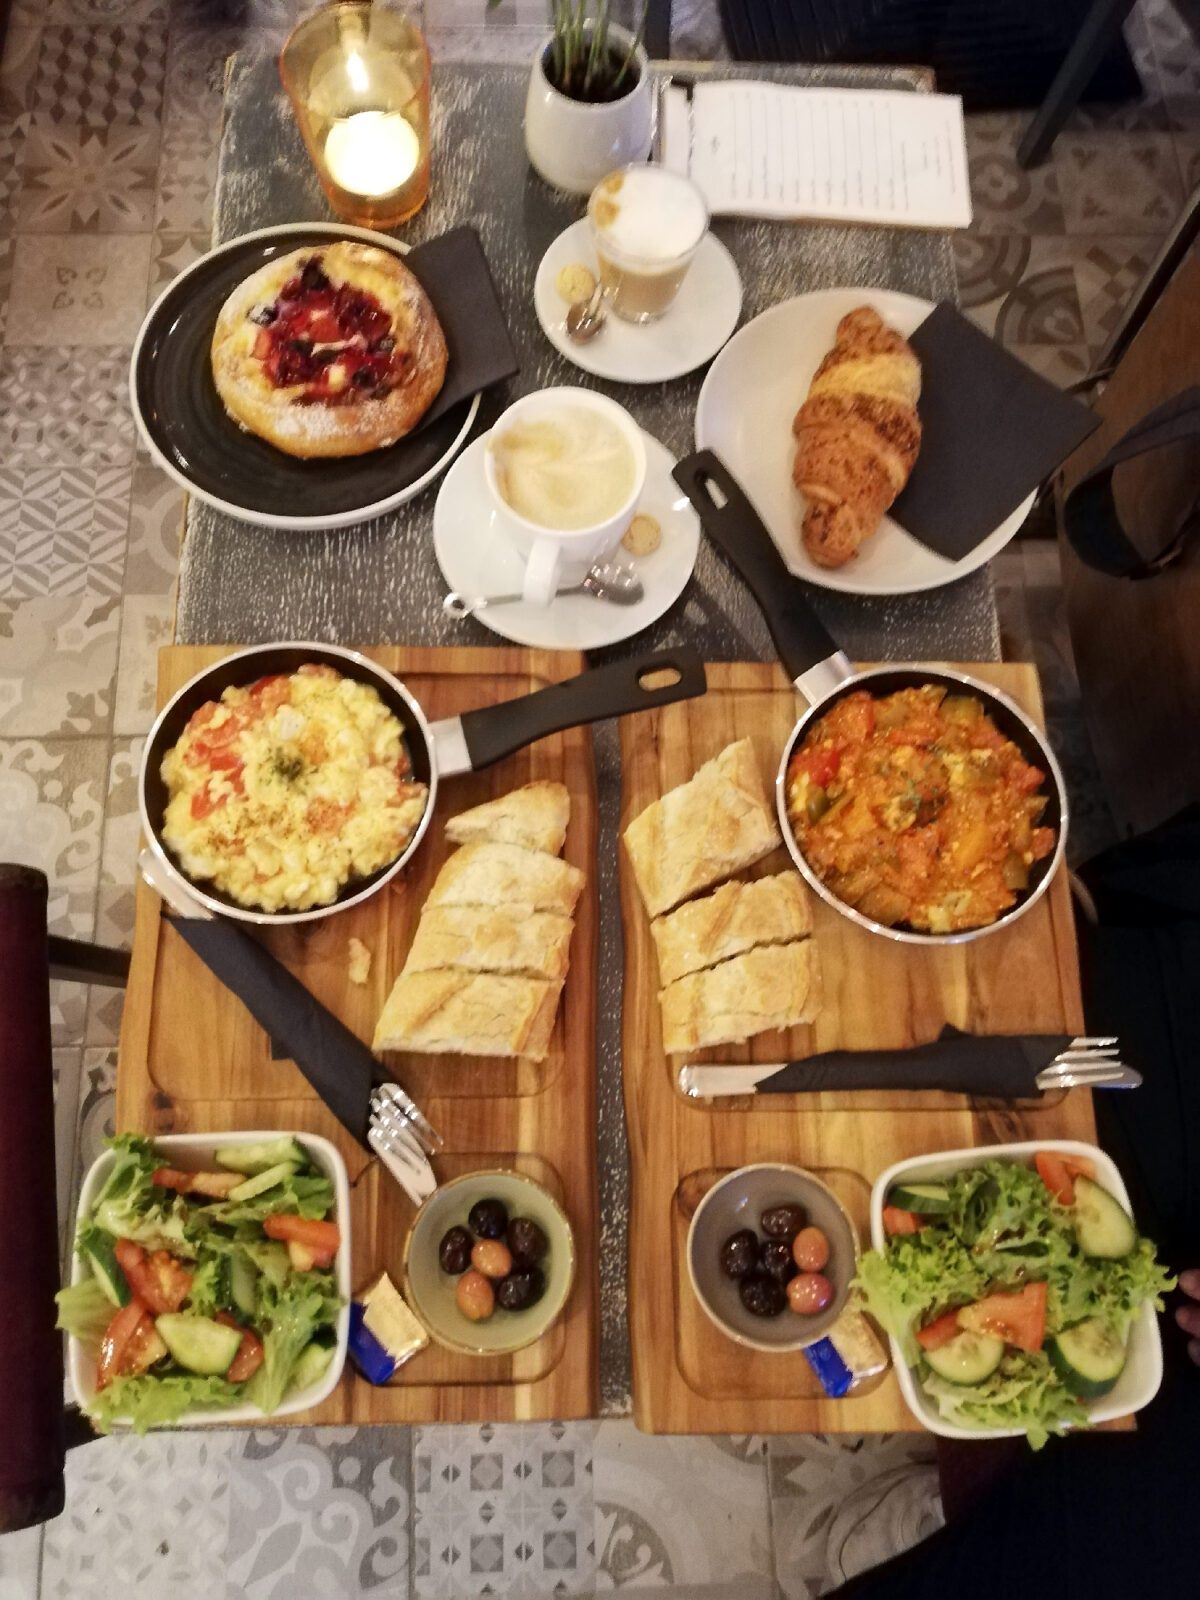 Zei Mal Frühstück: Rührei Mediterran (links) und Menemen (rechts) plus Getränke und zusätzlich zwei süße Teilchen. Foto: Hensel